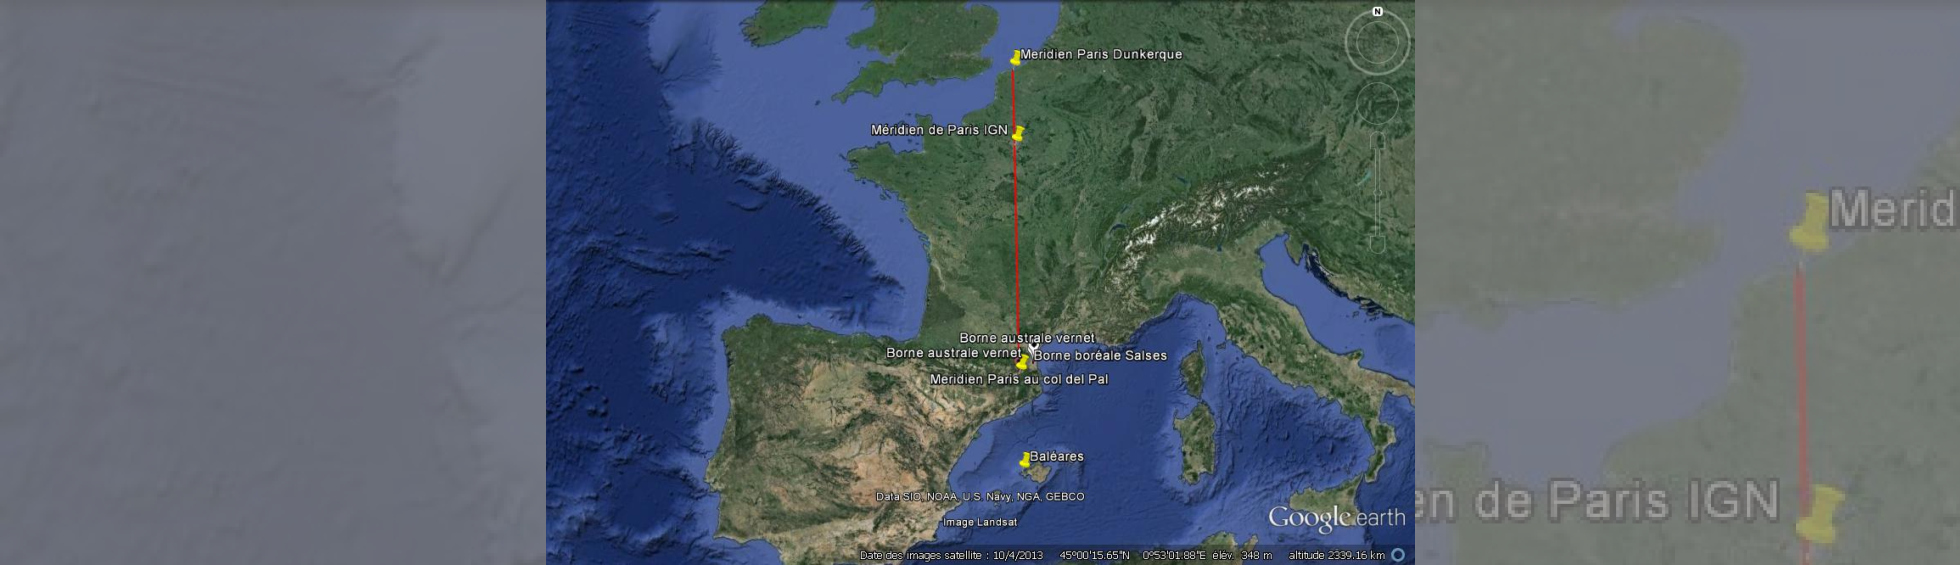 Vue aérienne Google Earth indiquant le méridien allant de Dunkerque à Barcelone 